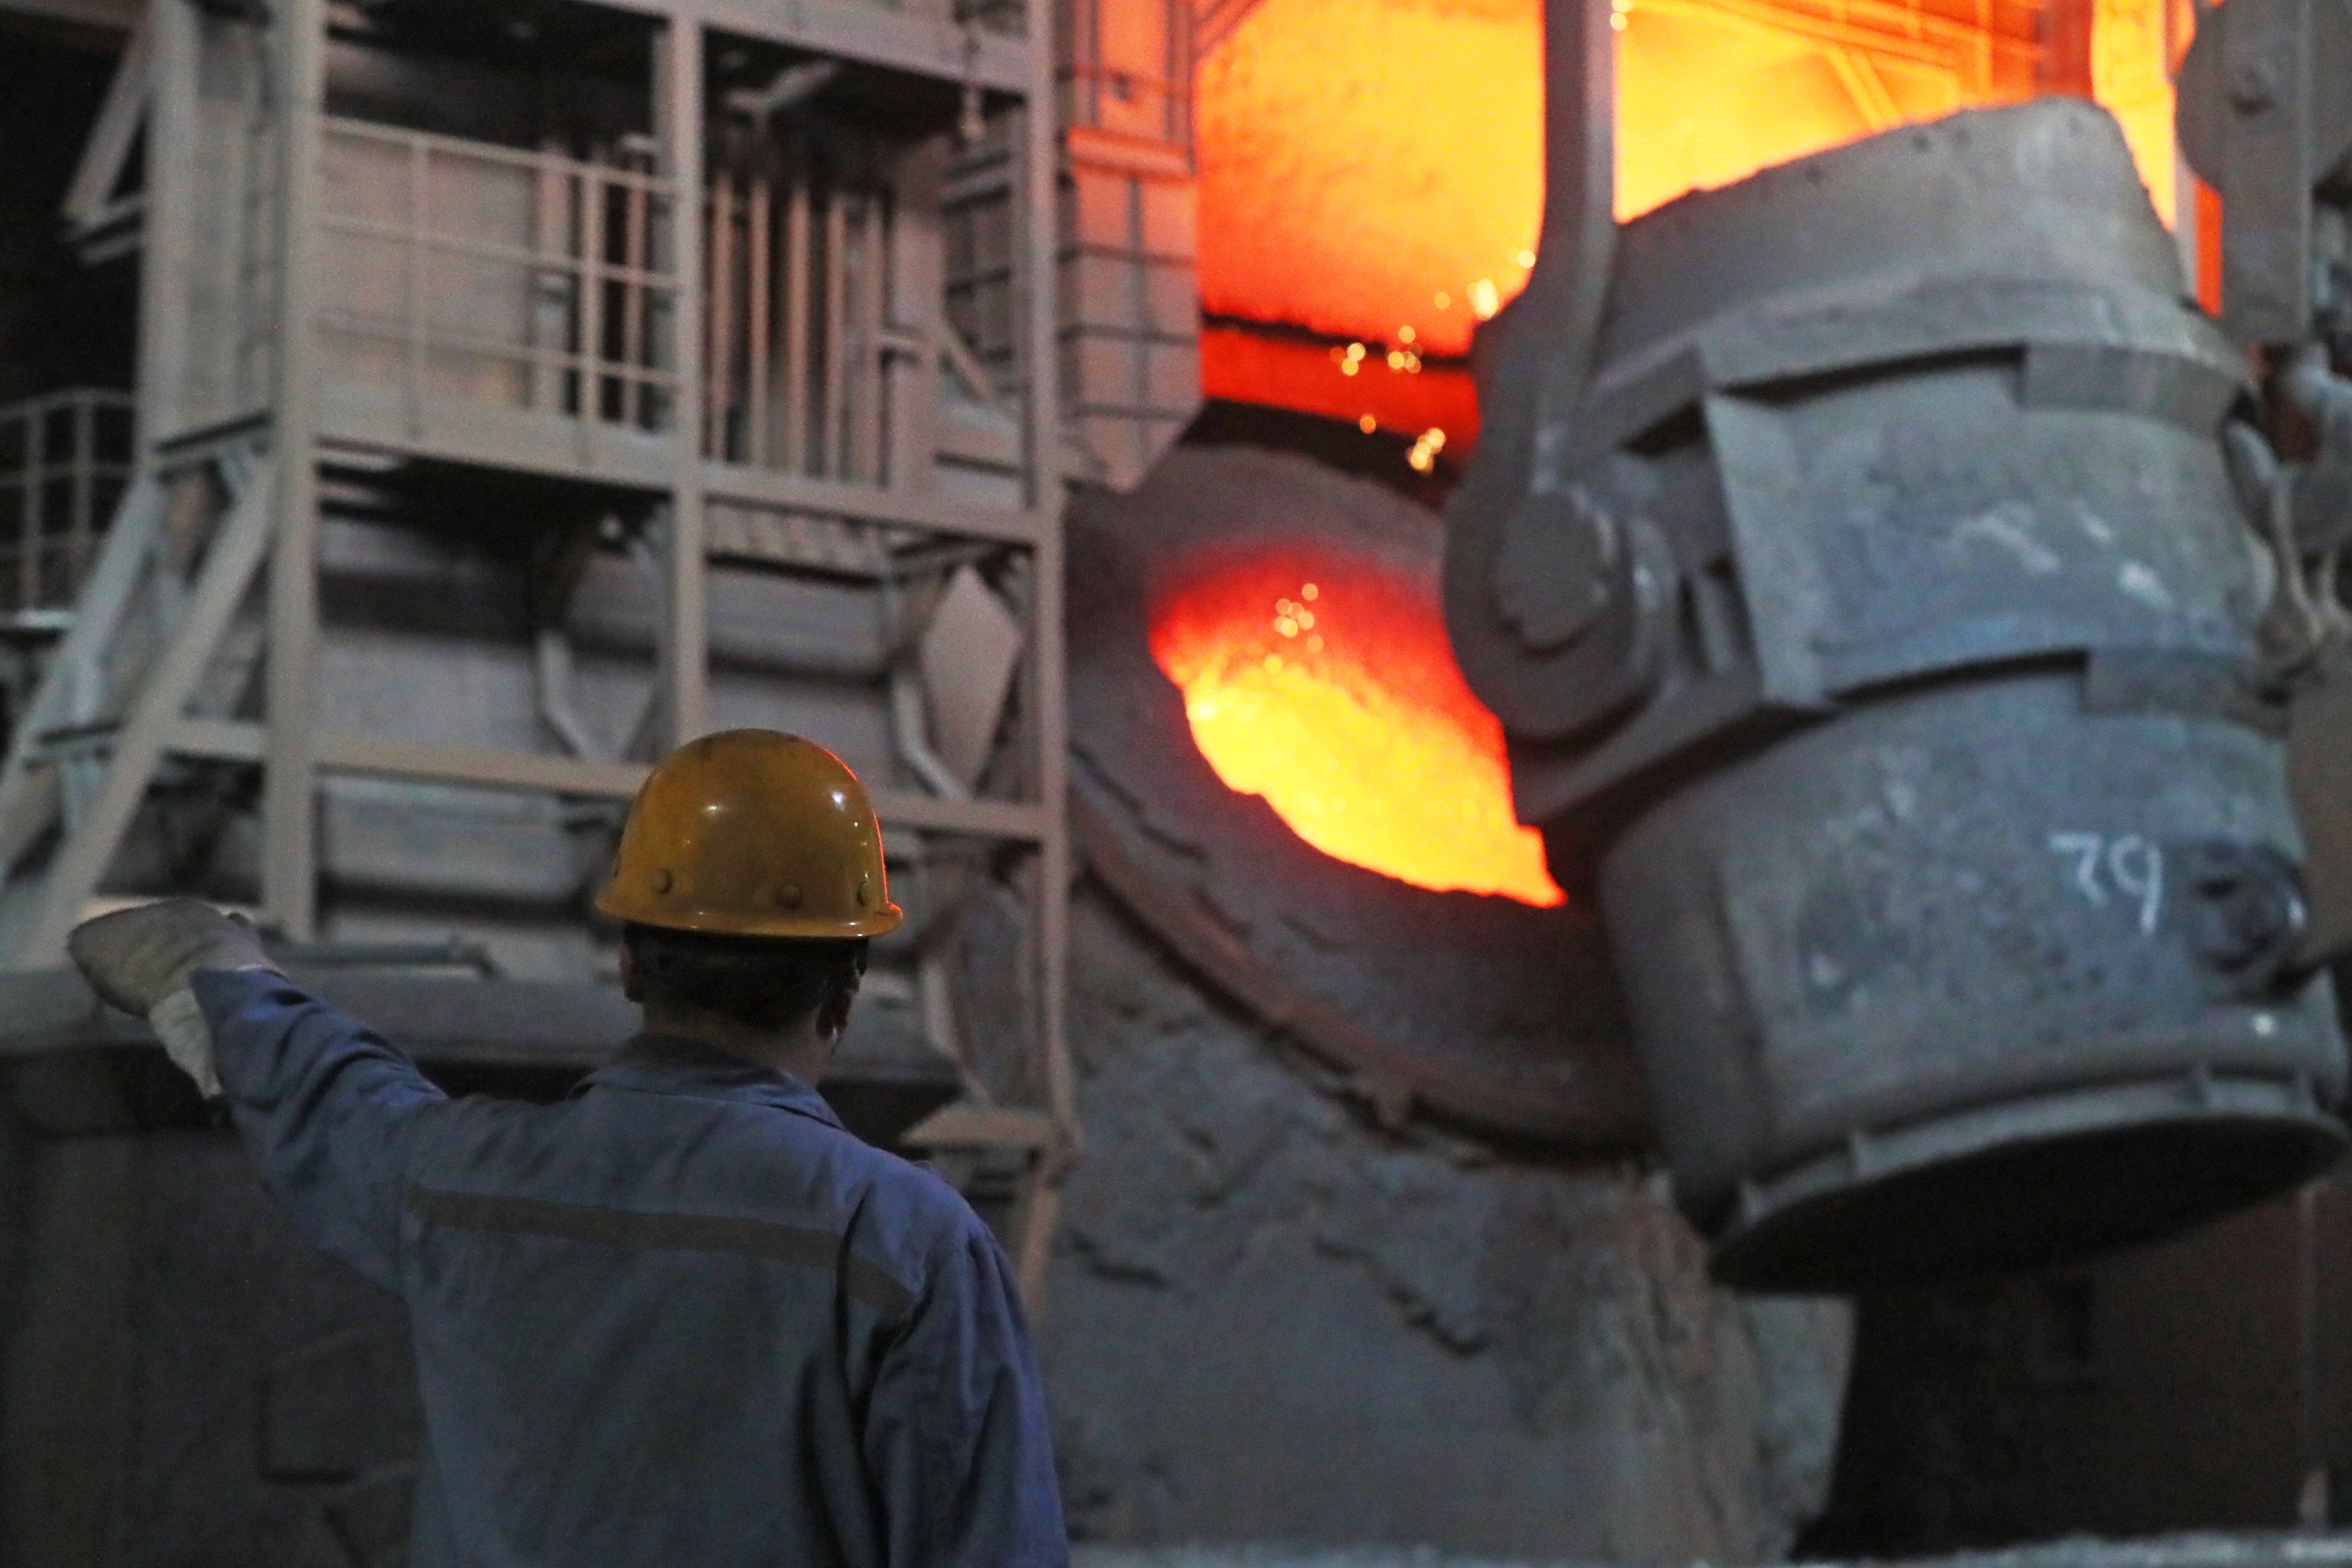 百年鞍钢本钢牵手,钢铁业高质量发展步履稳健